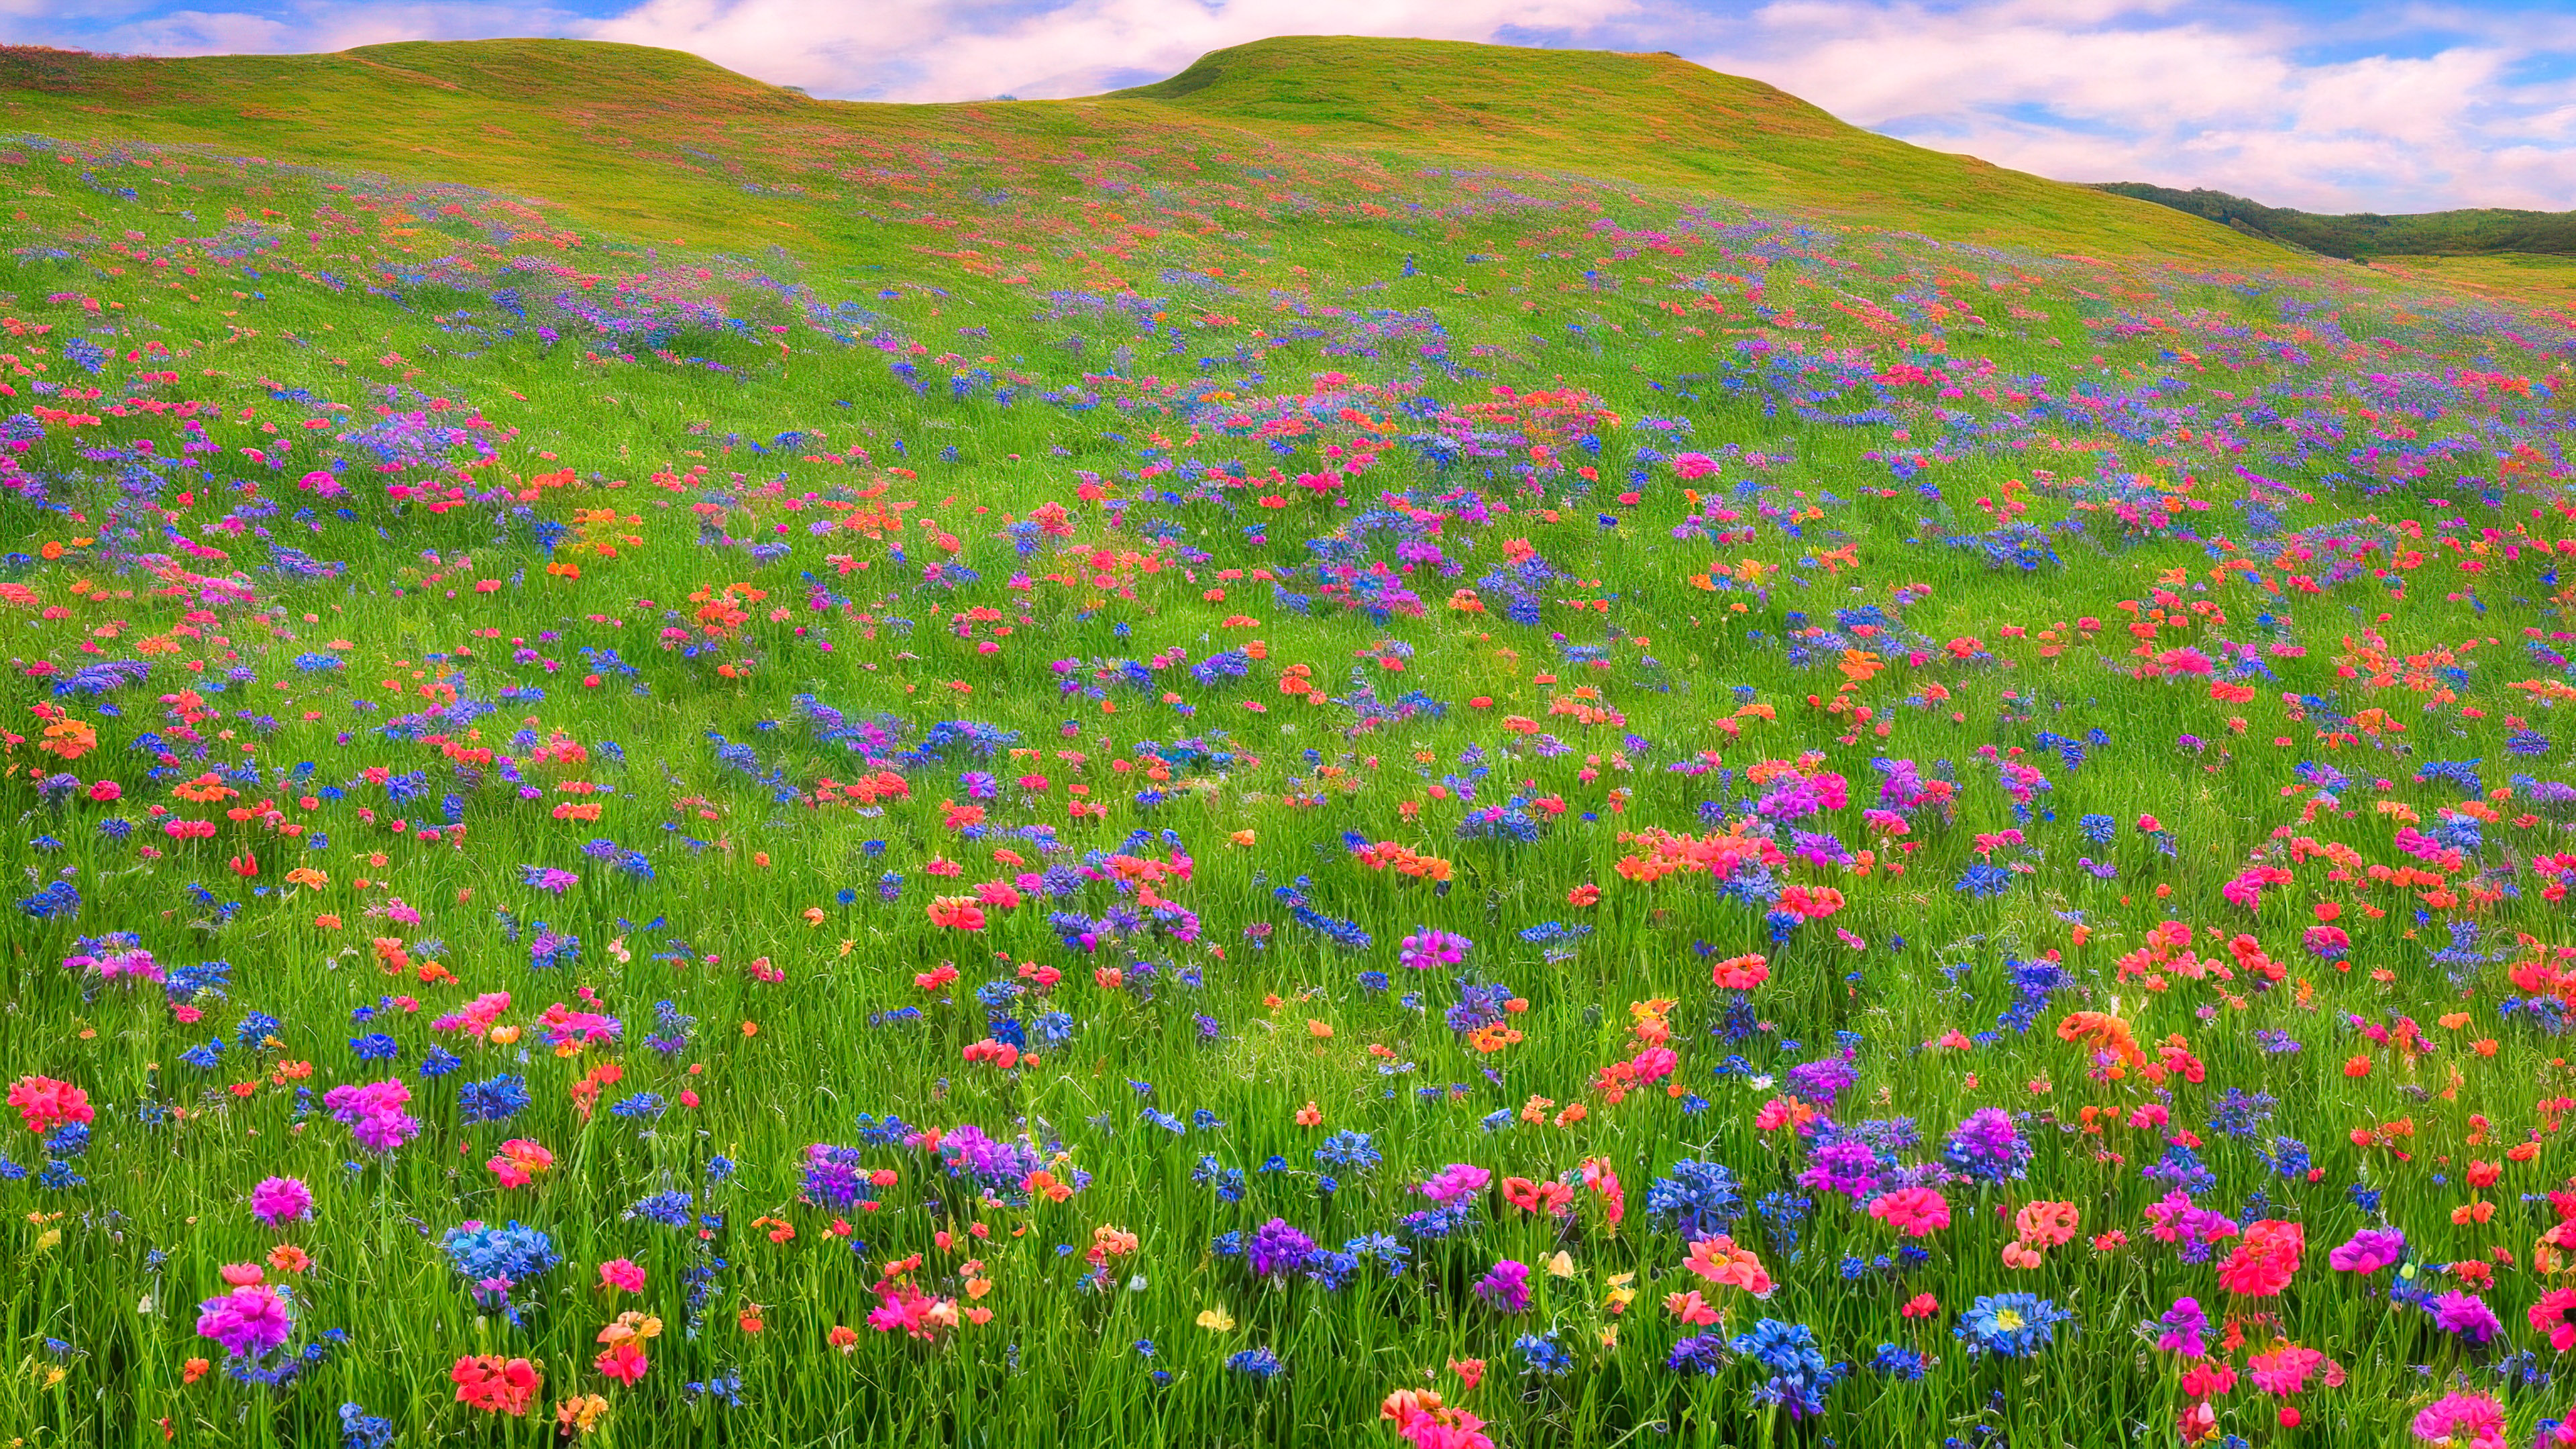 Découvrez la campagne avec notre fond d'écran de paysage, illustrant une prairie pittoresque couverte de fleurs sauvages colorées, avec en arrière-plan des collines ondulantes.